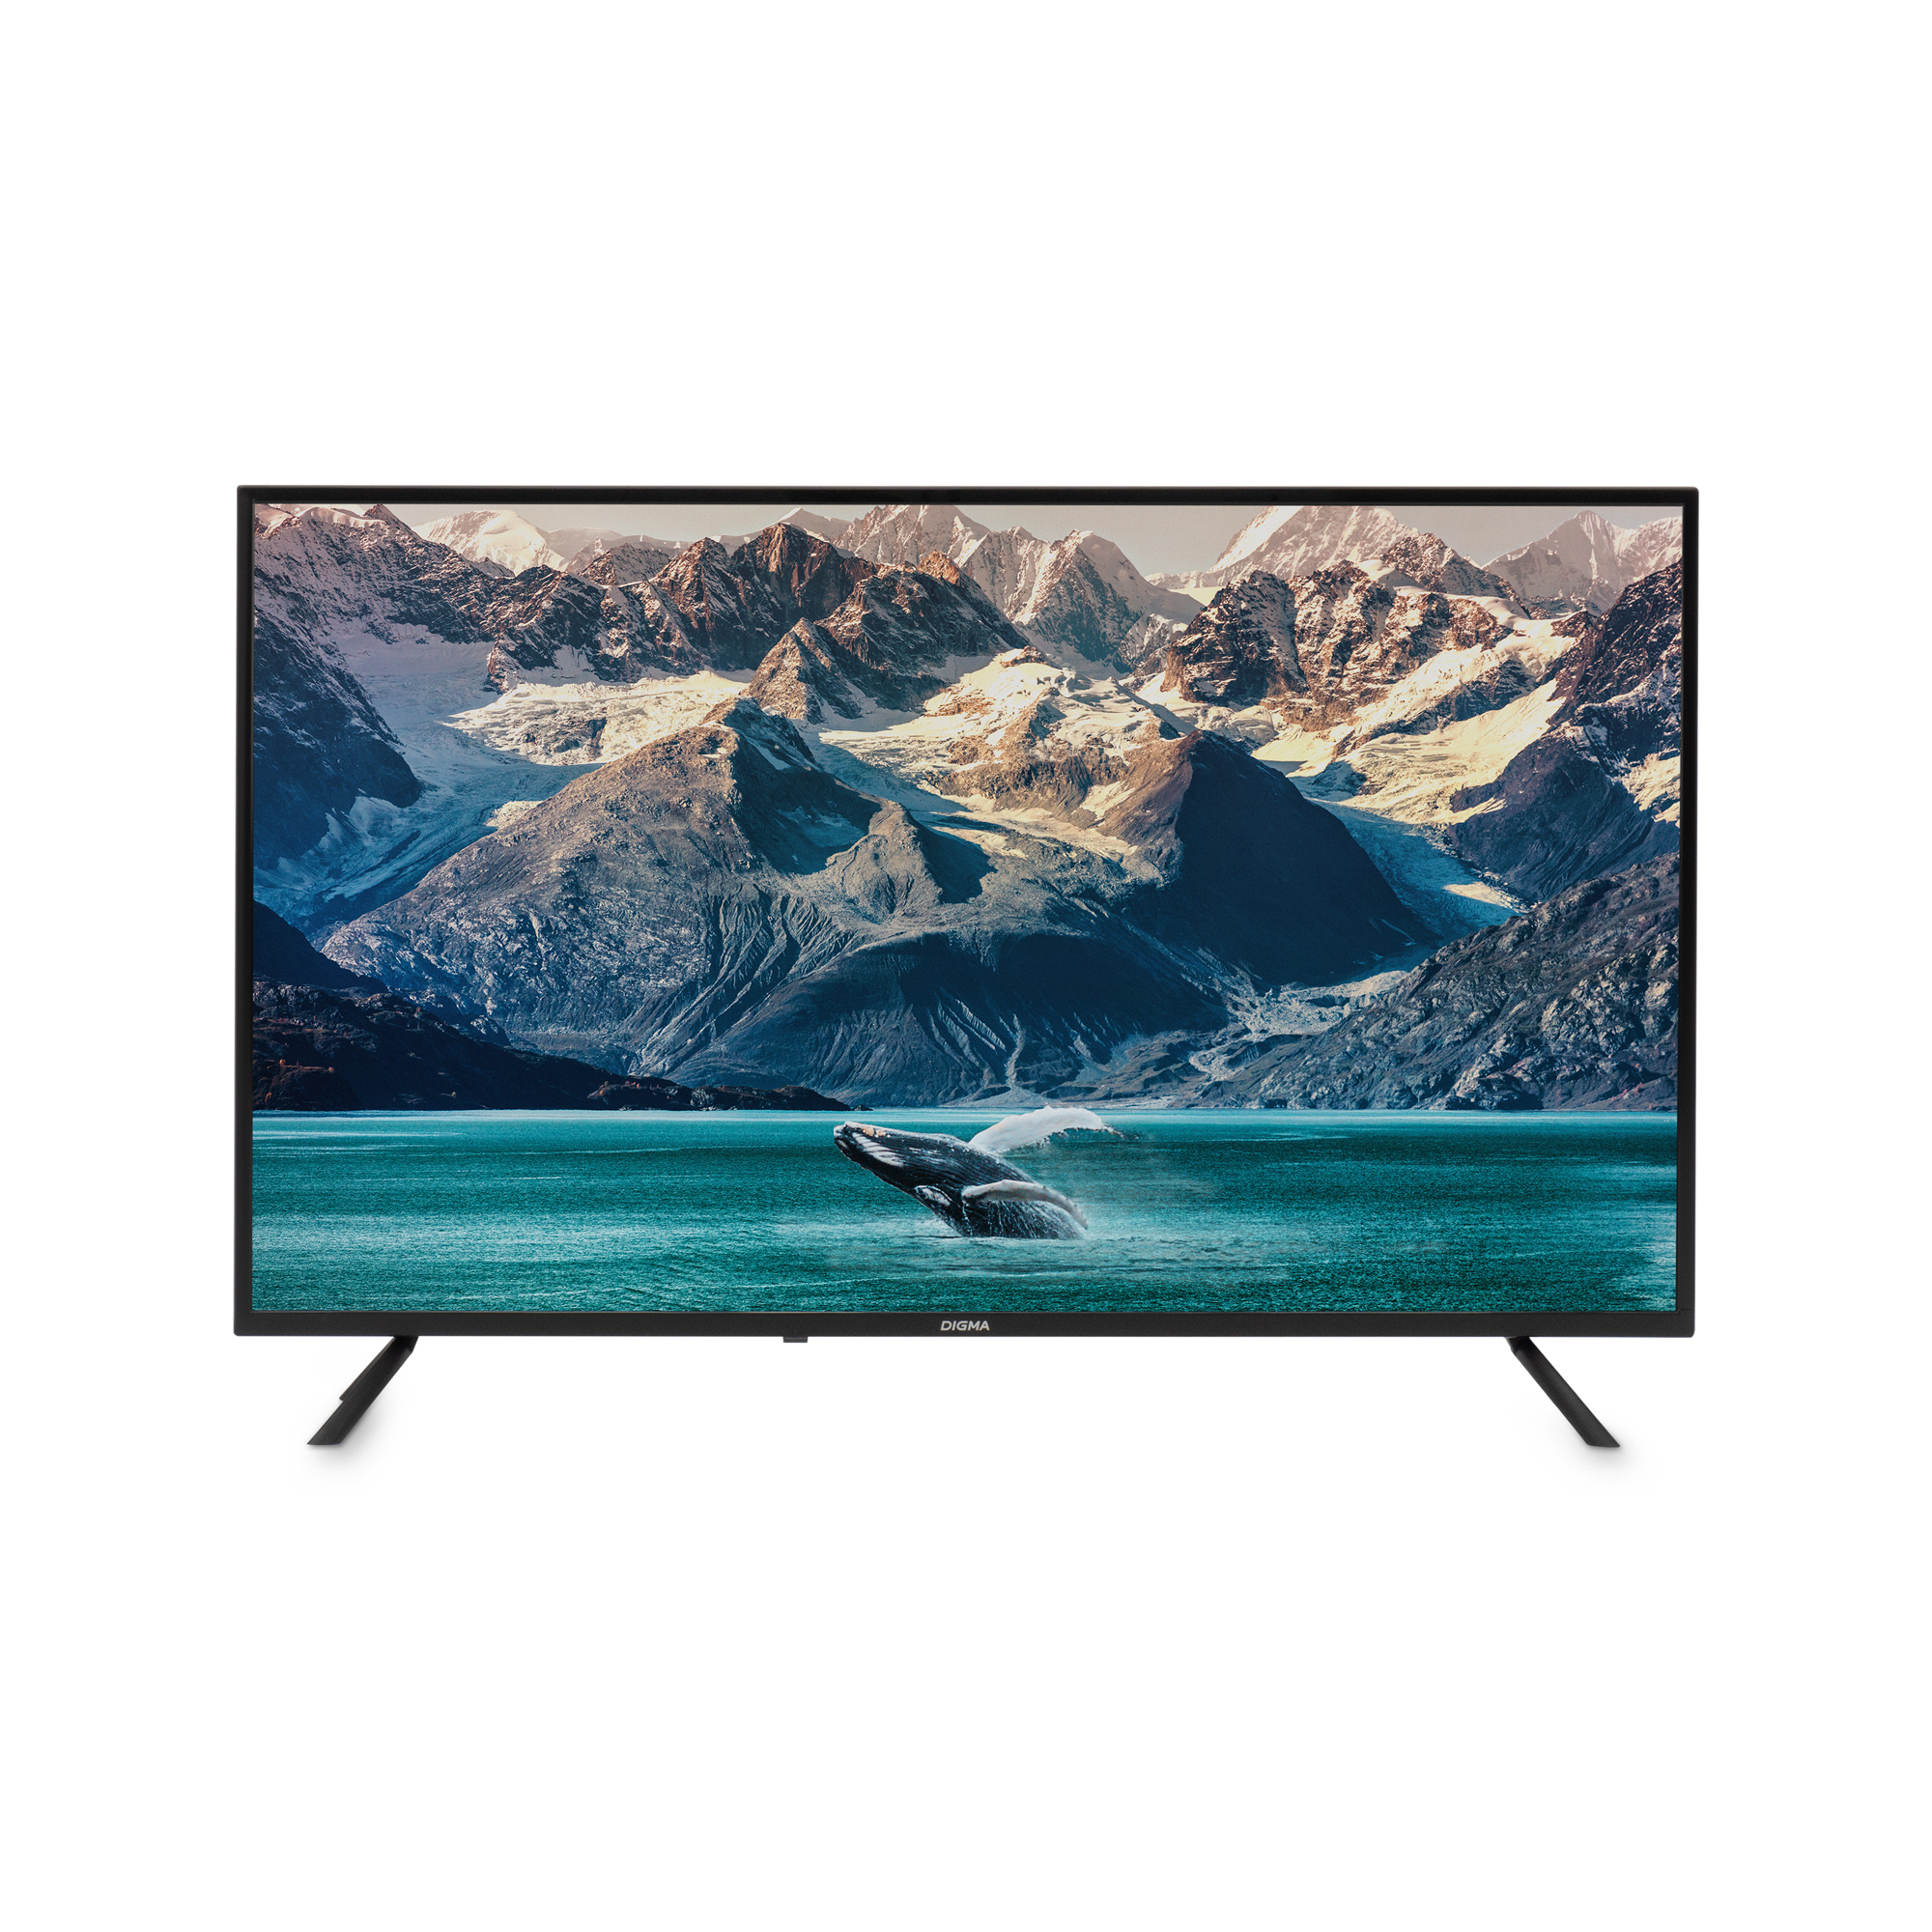 Телевизор DIGMA DM-LED43MBB21, 43"(109 см), HD, купить в Москве, цены в интернет-магазинах на Мегамаркет